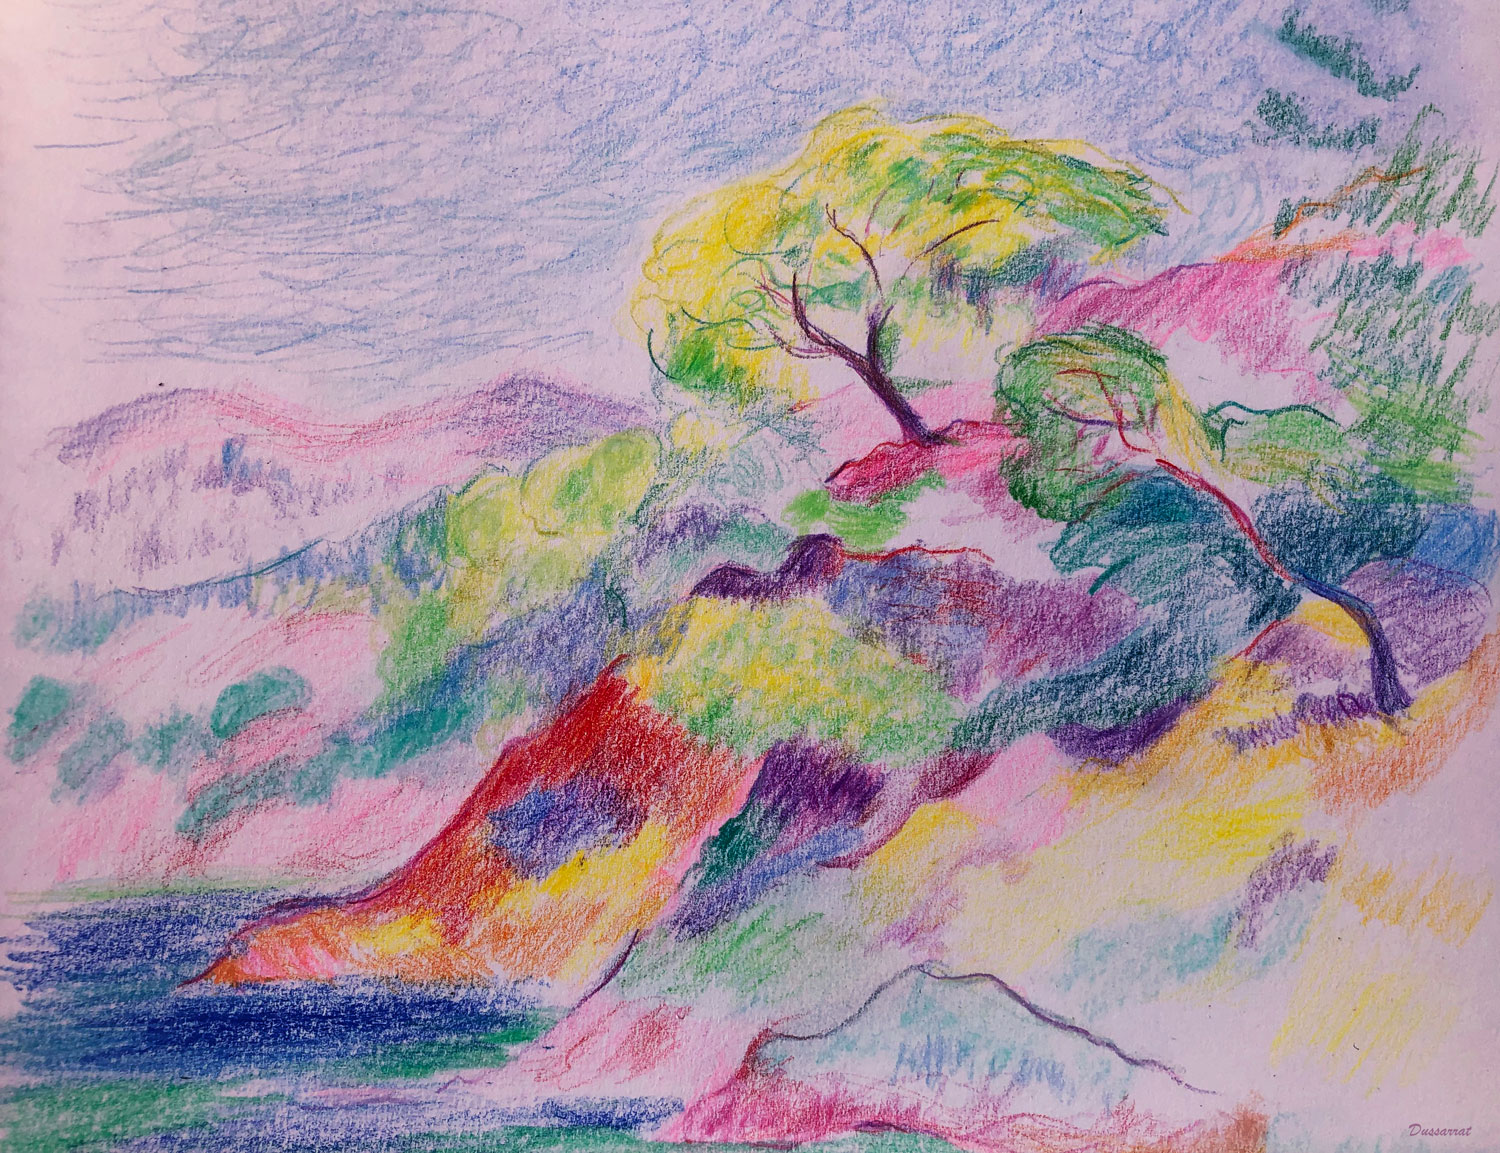 Les roches rouges. Crayon de couleur sur papier. 21x29, 2023. D'après Henri Manguin. Les roches rouges, Cavalière, 1906. Huile sur toile.